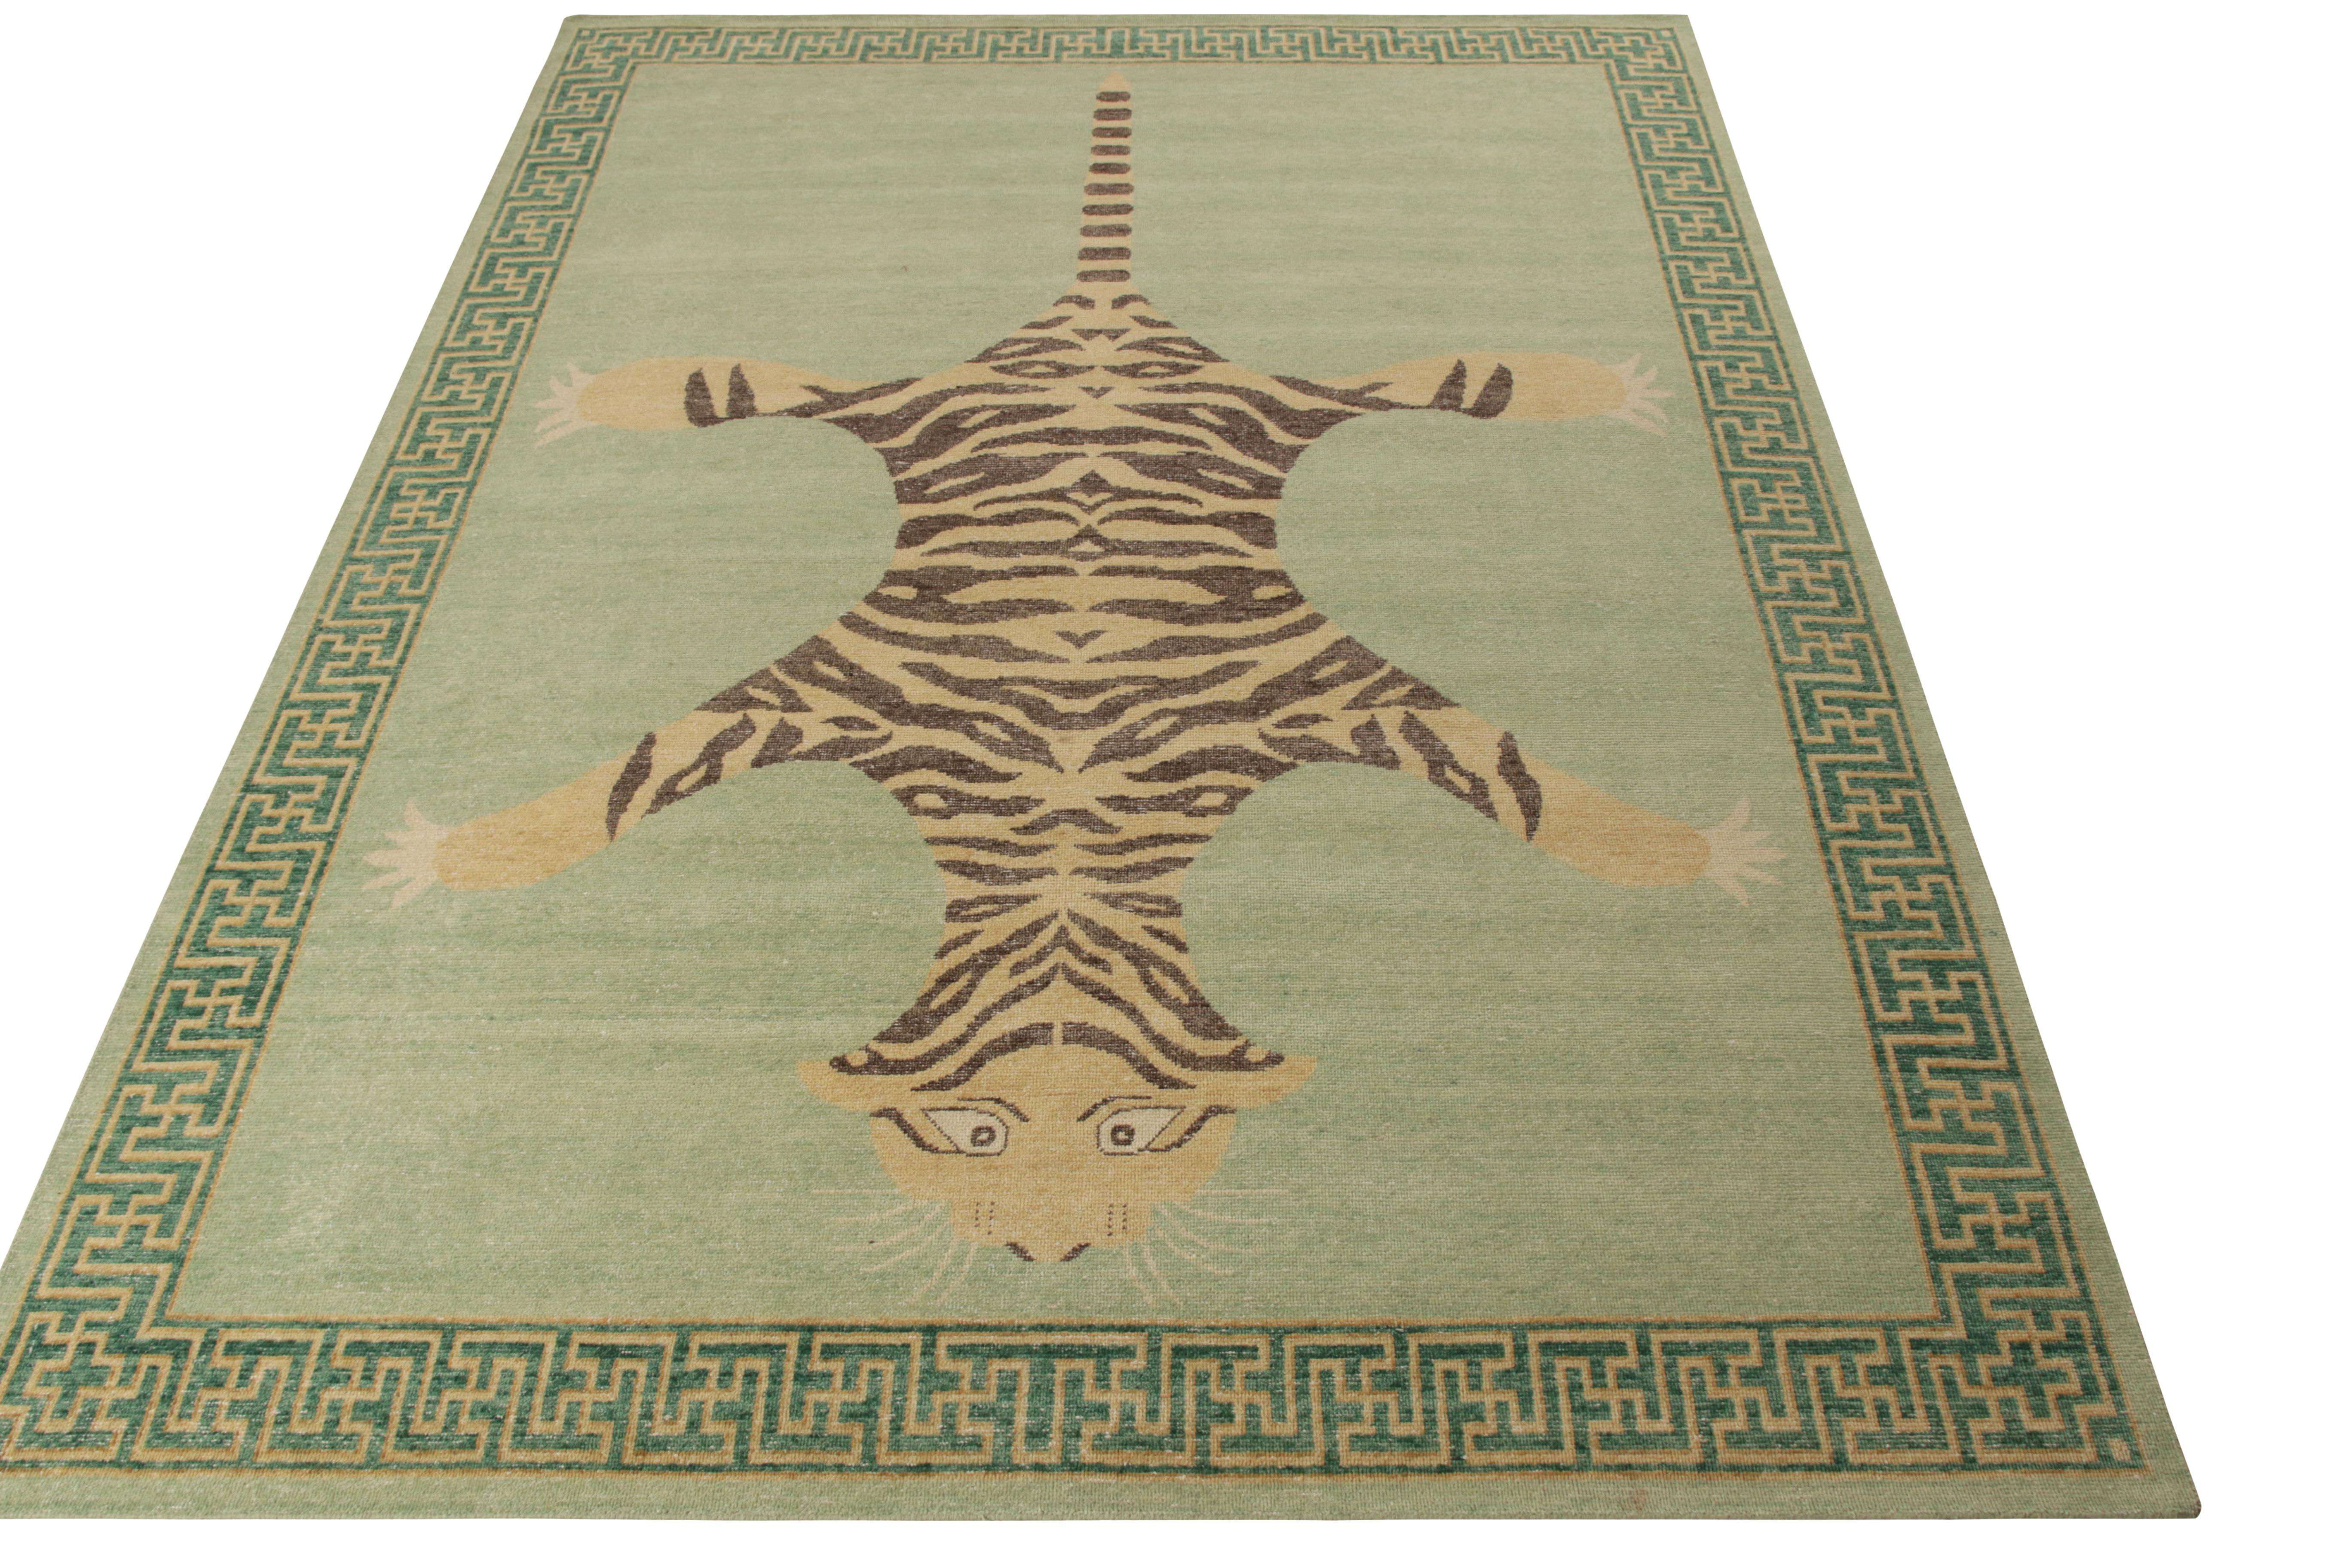 Une ode aux célèbres styles de tapis tigrés classiques de l'Inde, disponible en tant que tapis personnalisé de la Collection Homage de Rug & Kilim. Noué à la main en laine, il illustre la vision moderne de cette collection sur le style vieilli grâce